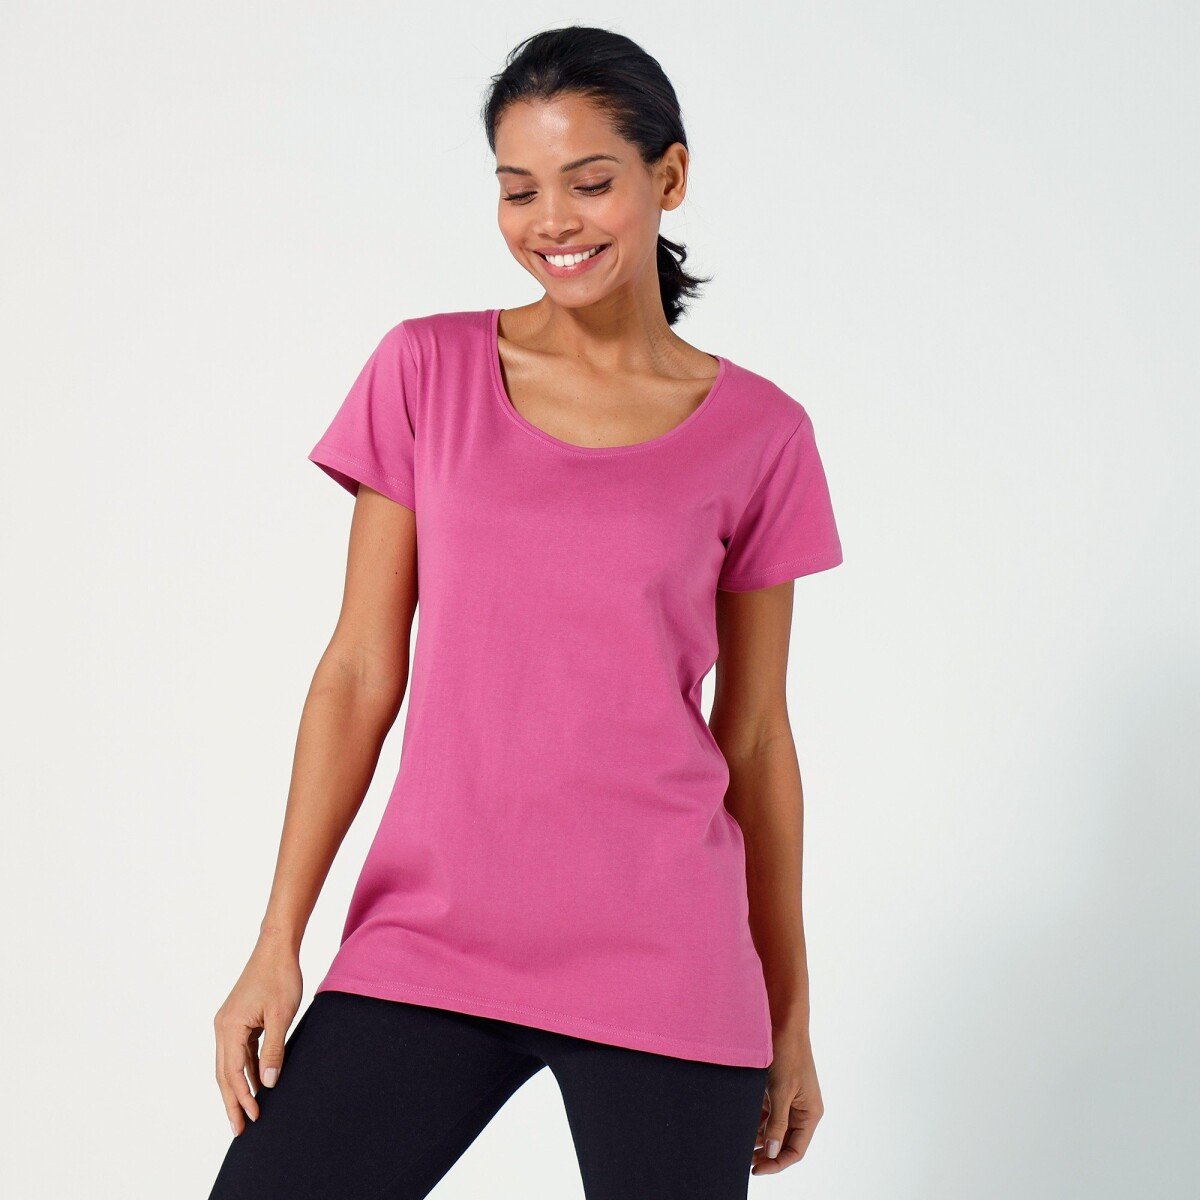 Jednofarebné tričko s krátkymi rukávmi, z bio bavlny, eco-friendly